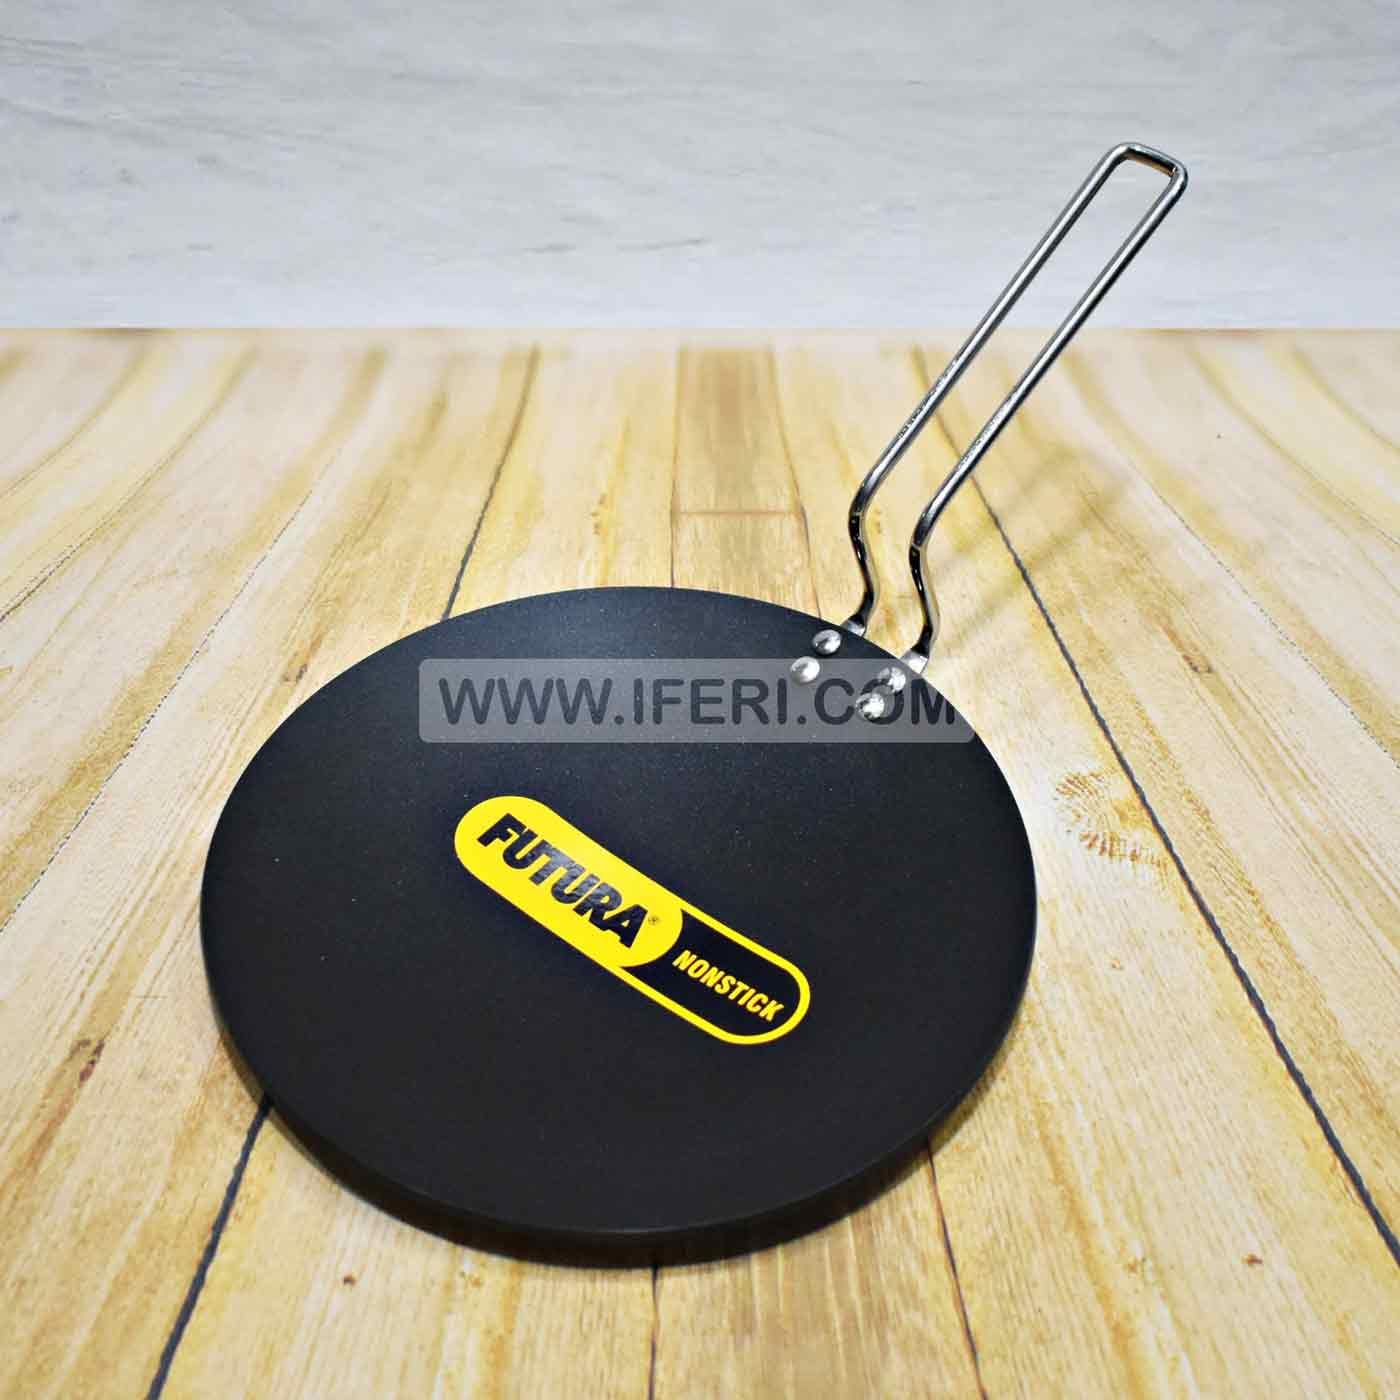 26 cm Futura Non Stick Tawa ALM6829 - Price in BD at iferi.com